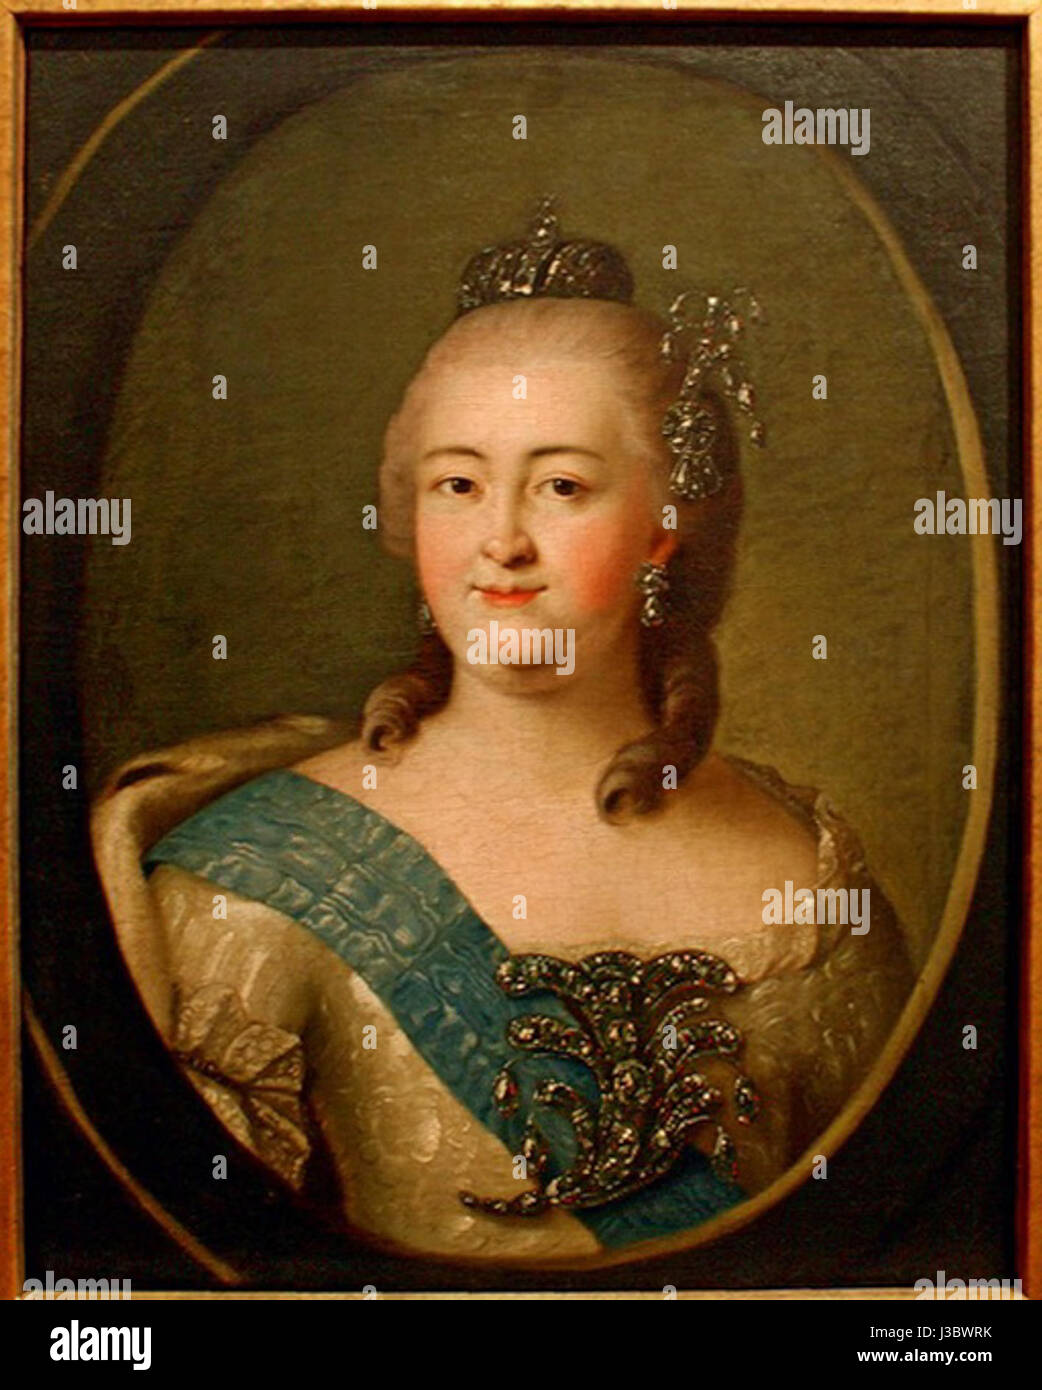 Луи Каравакк портрет императрицы Елизаветы Петровны 1750